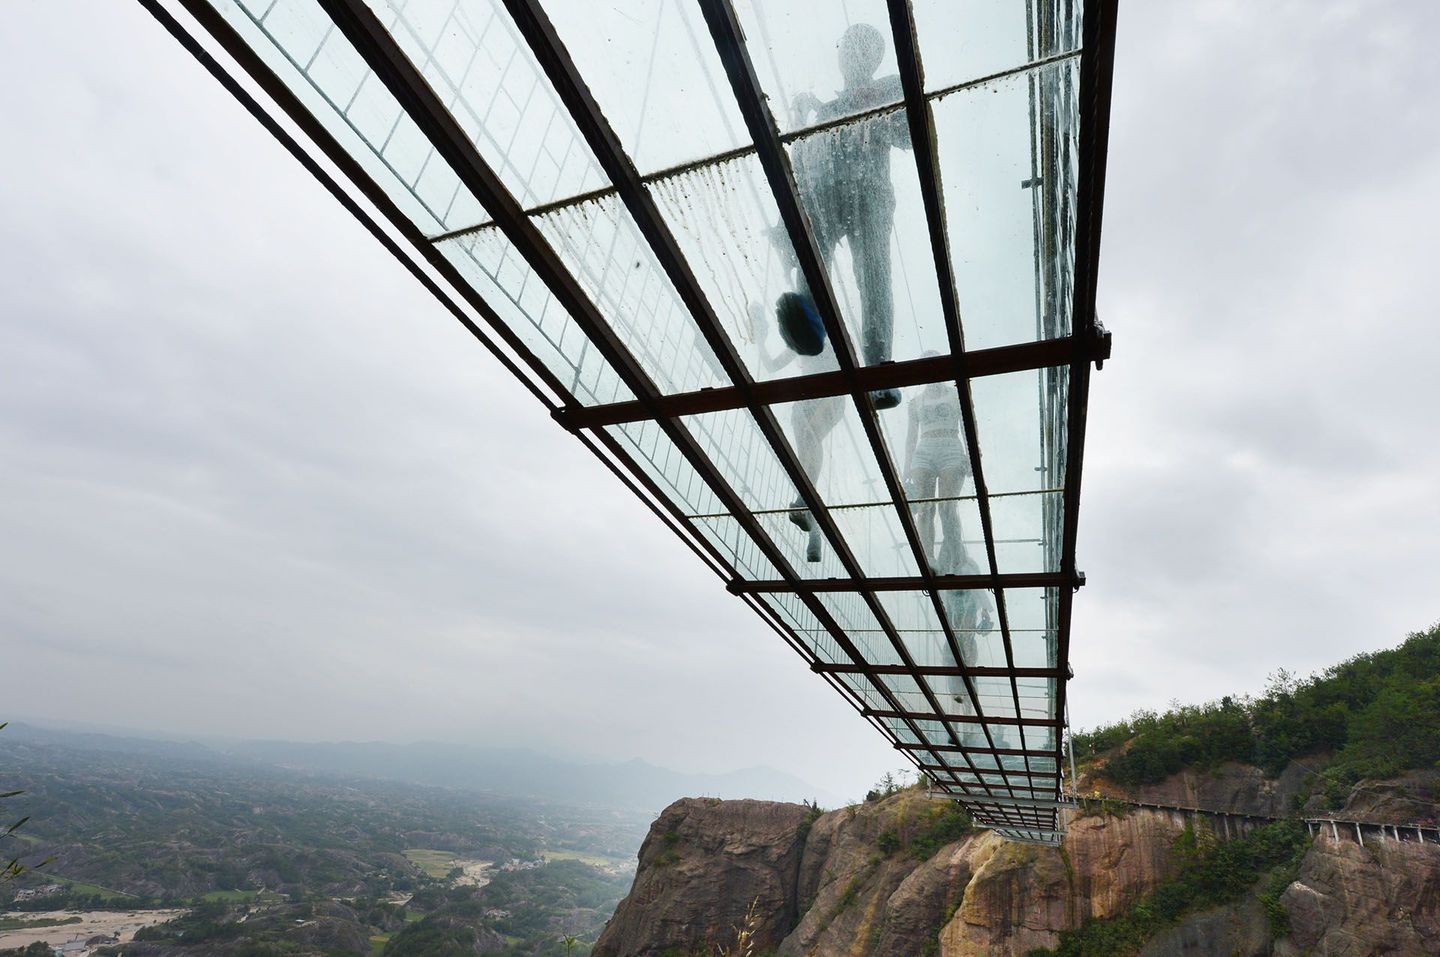 Един от най-дългите и уникални стъклени мостове в света,се намира в китайската провинция Хунан.